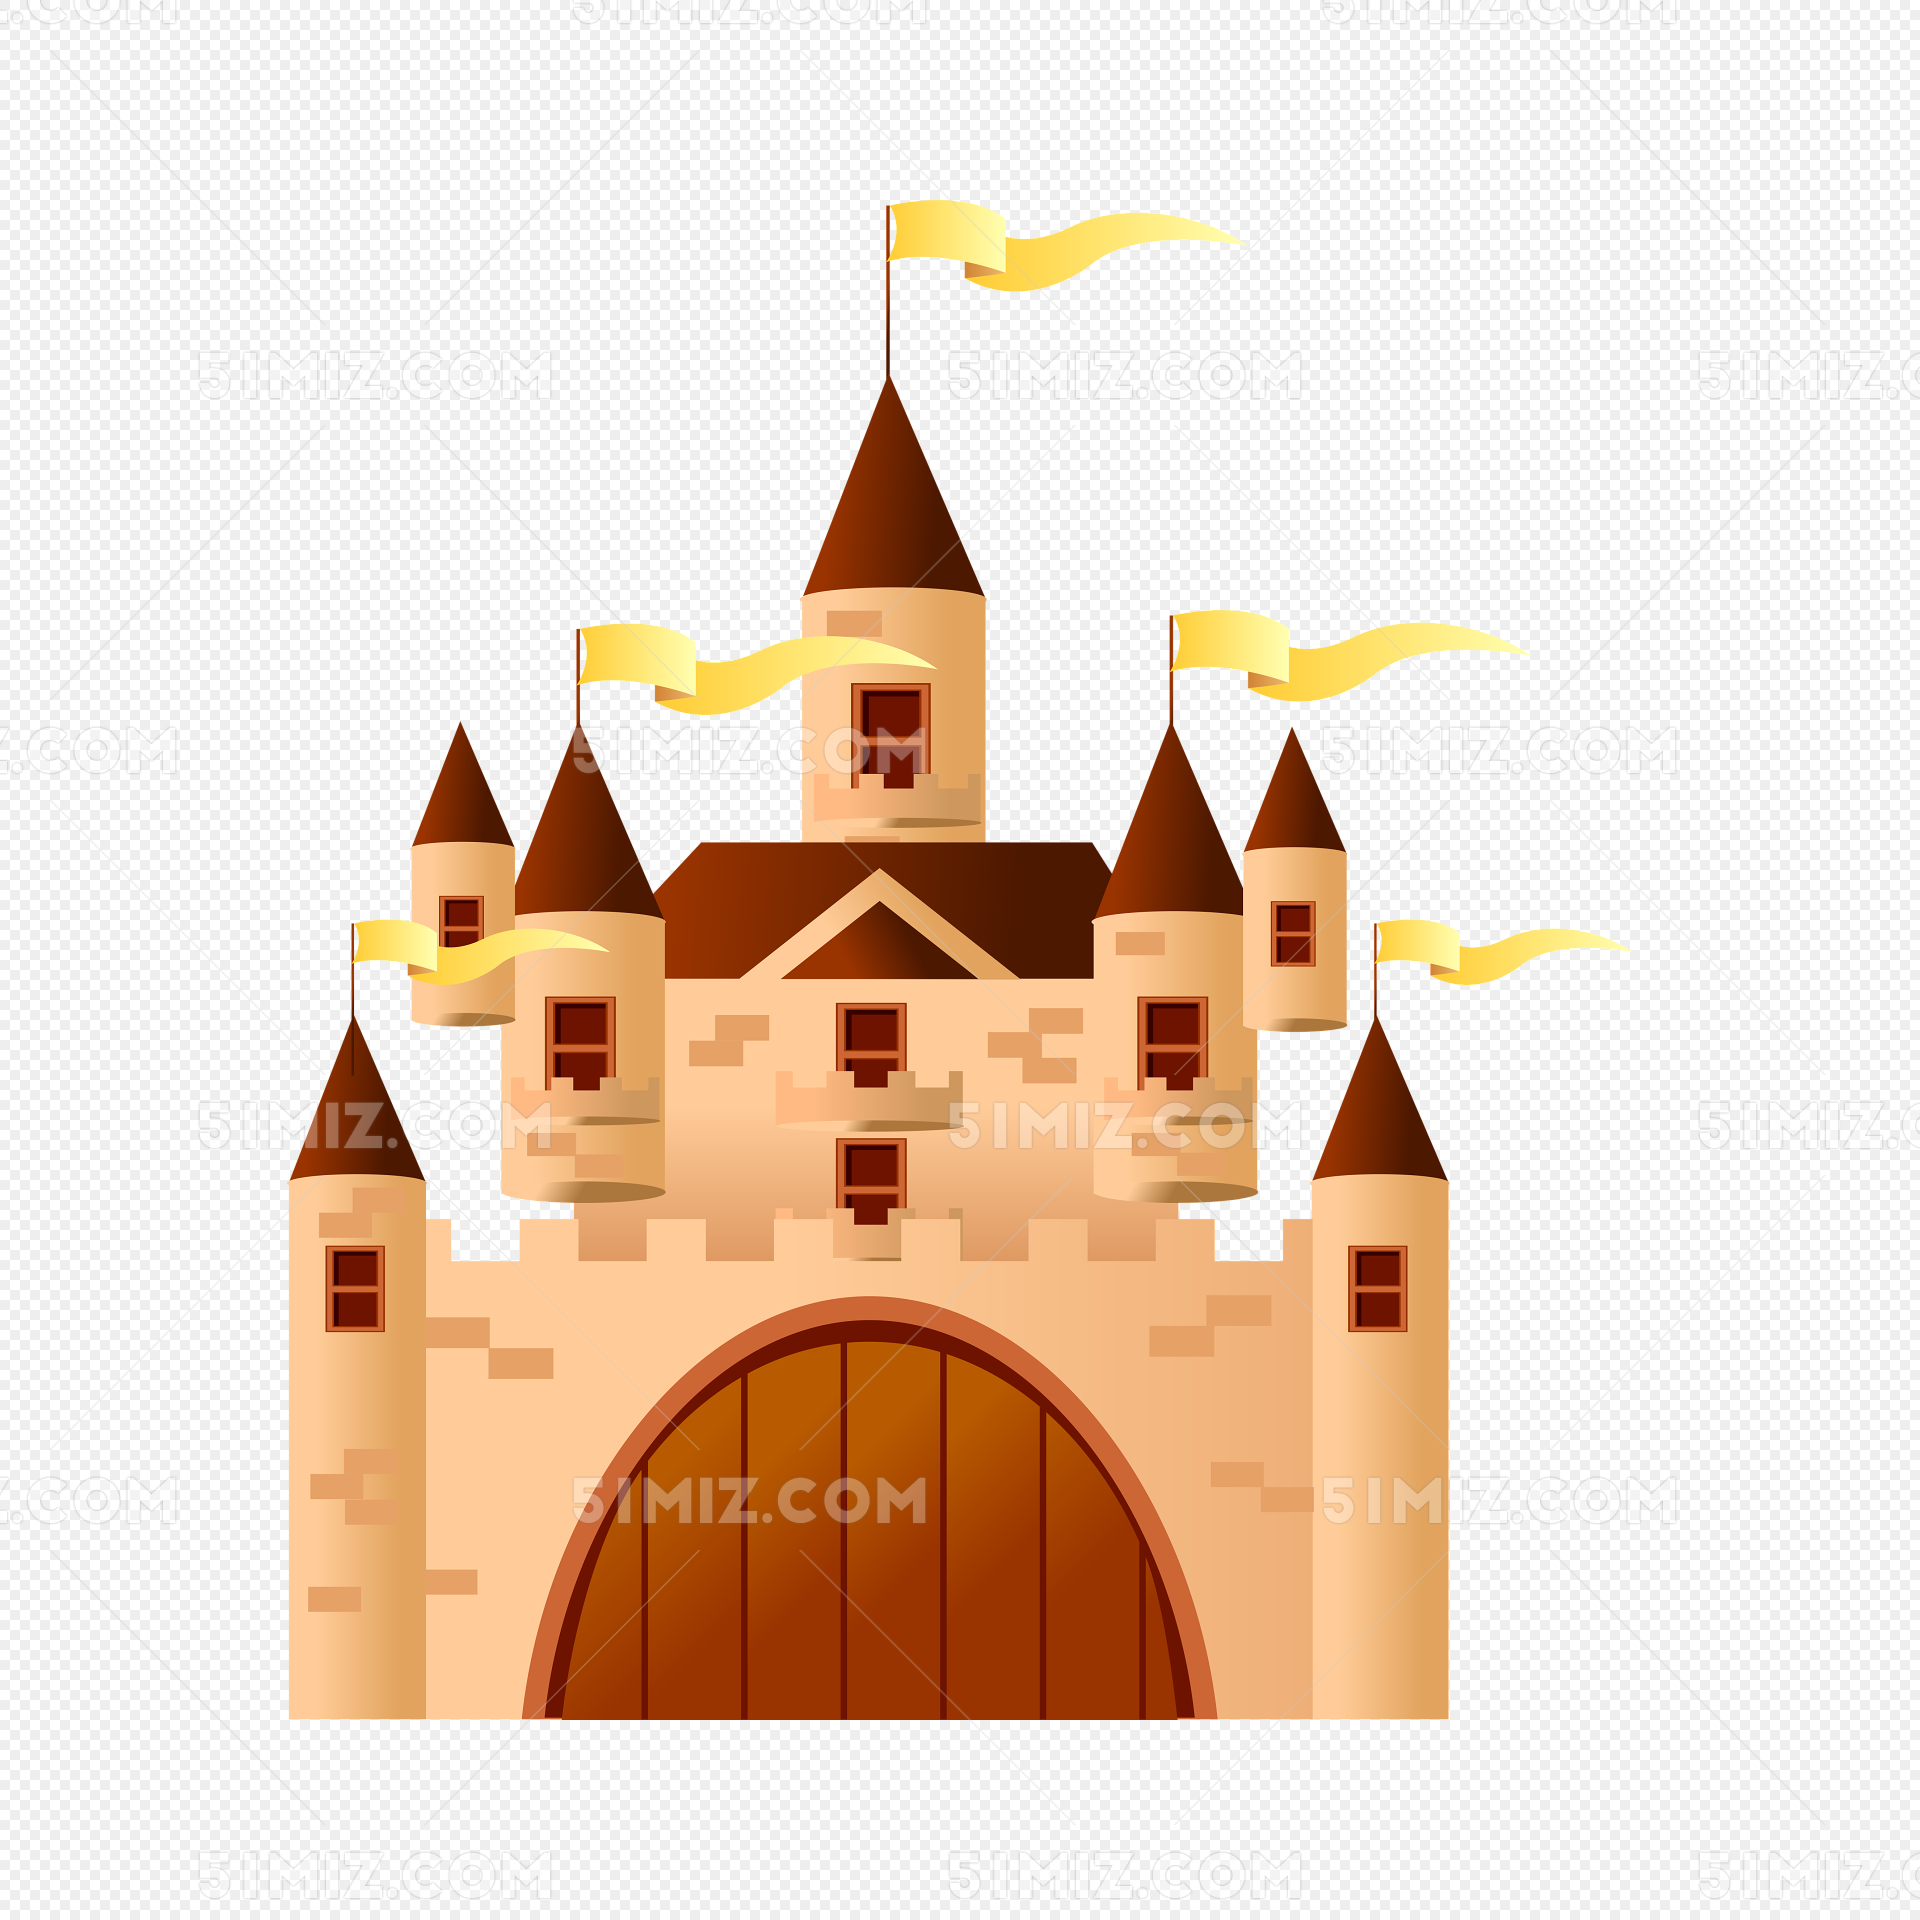 建筑城堡简笔画矢量图PNG图片素材免费下载 - 觅知网